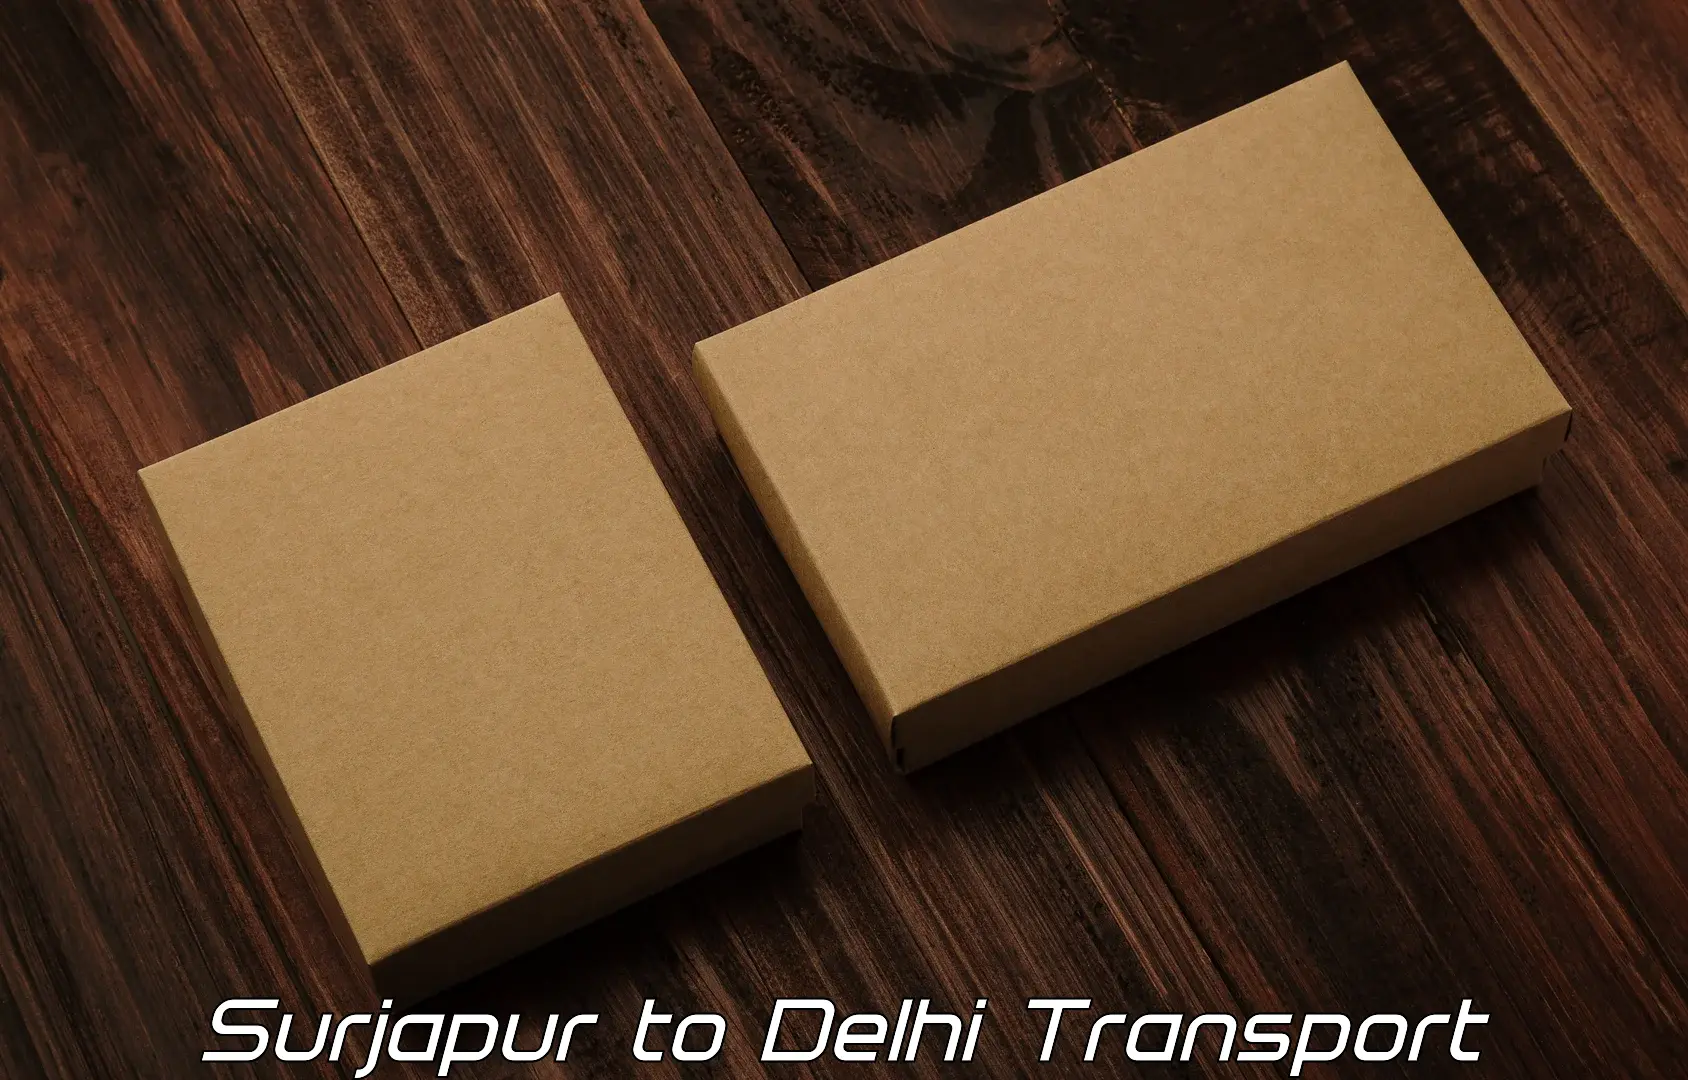 Logistics transportation services Surjapur to Jhilmil